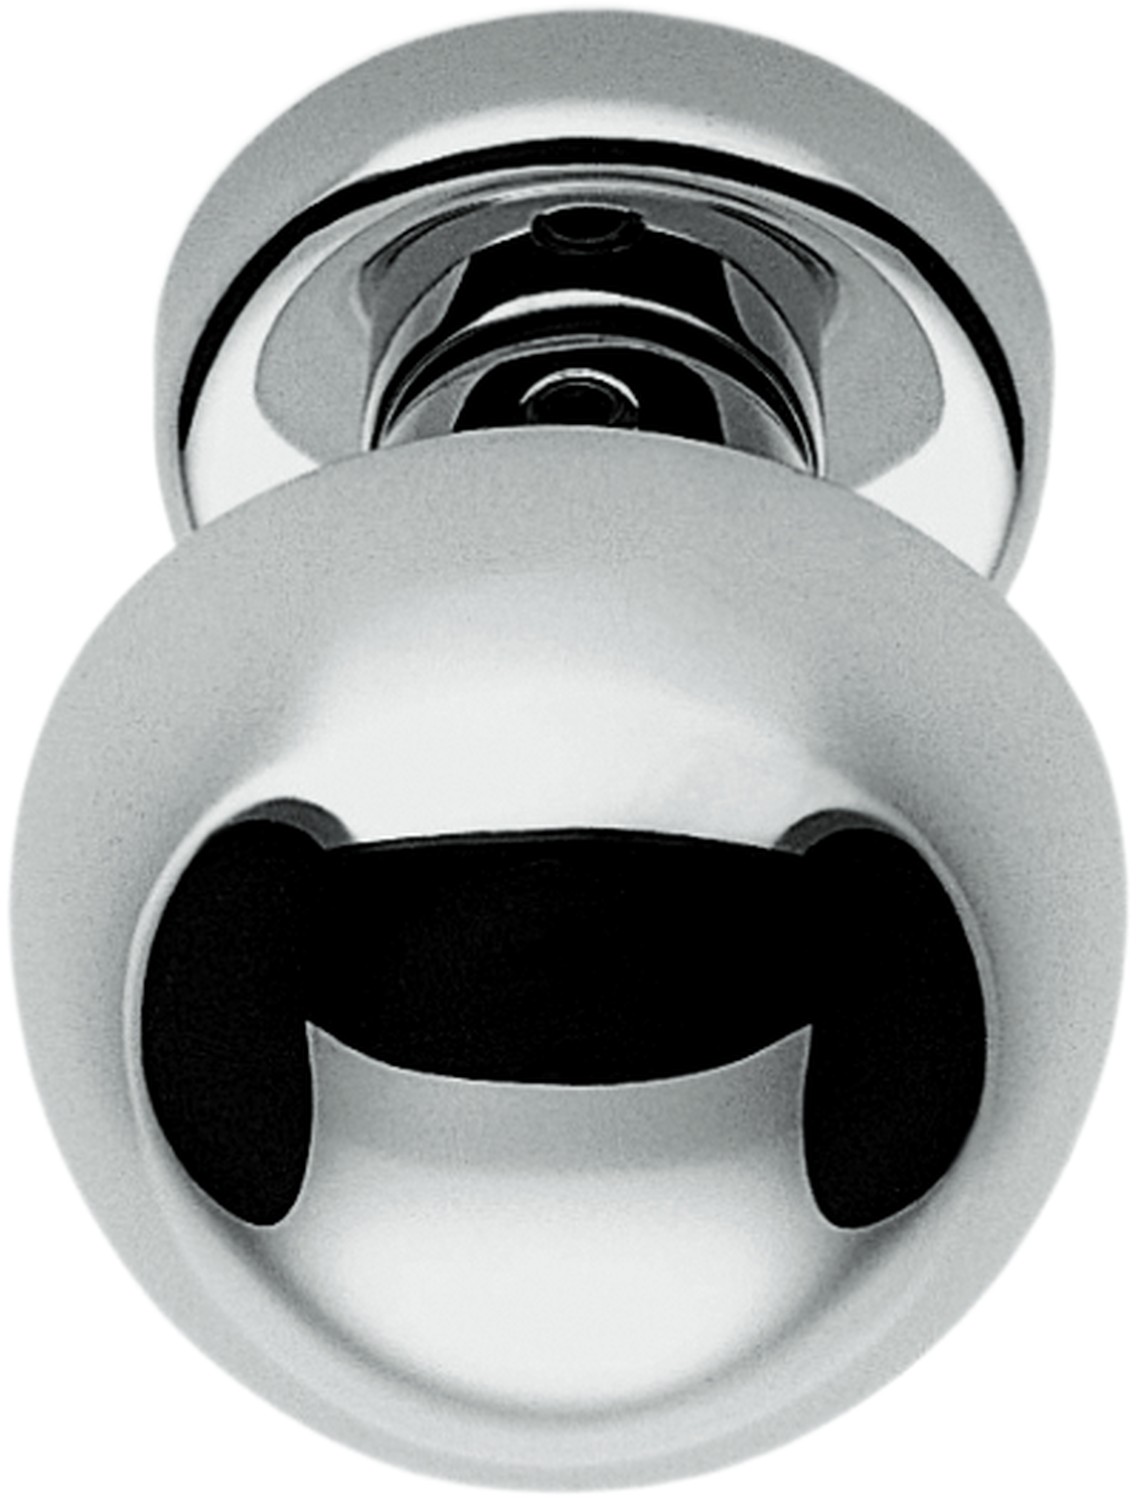 COLOMBO DESIGN -  Pomolo ROBOT tondo accoppiato con quadro rosette e bocchette tonde foro patent - col. OROPLUS - OTTONE LUCIDO - dim. Ø 55